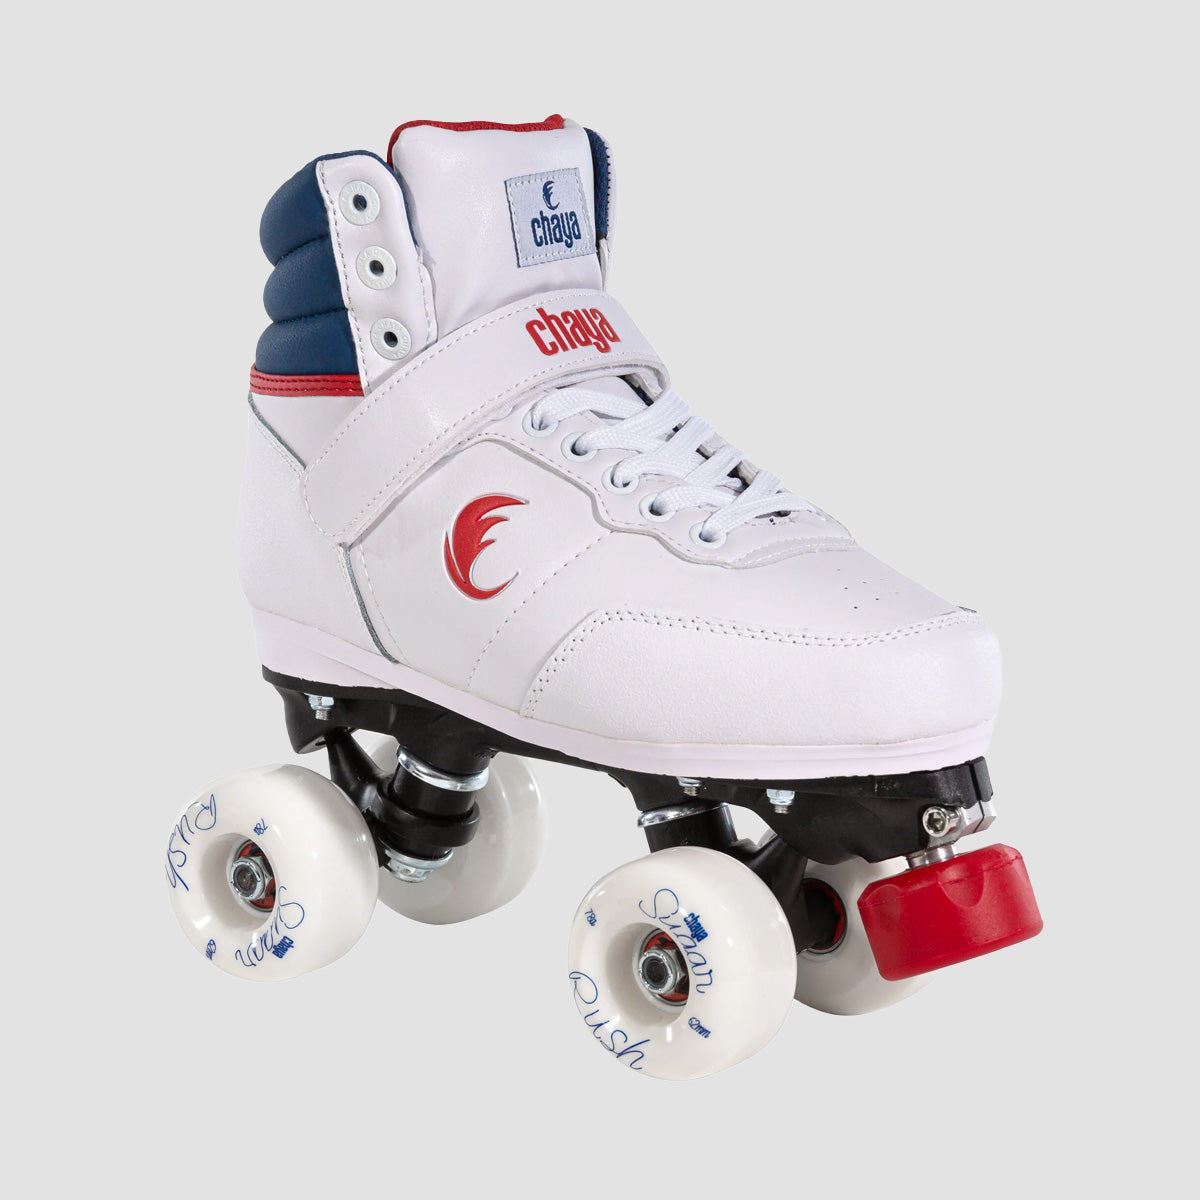 Chaya Park Jump 2.0 Quad Skates White